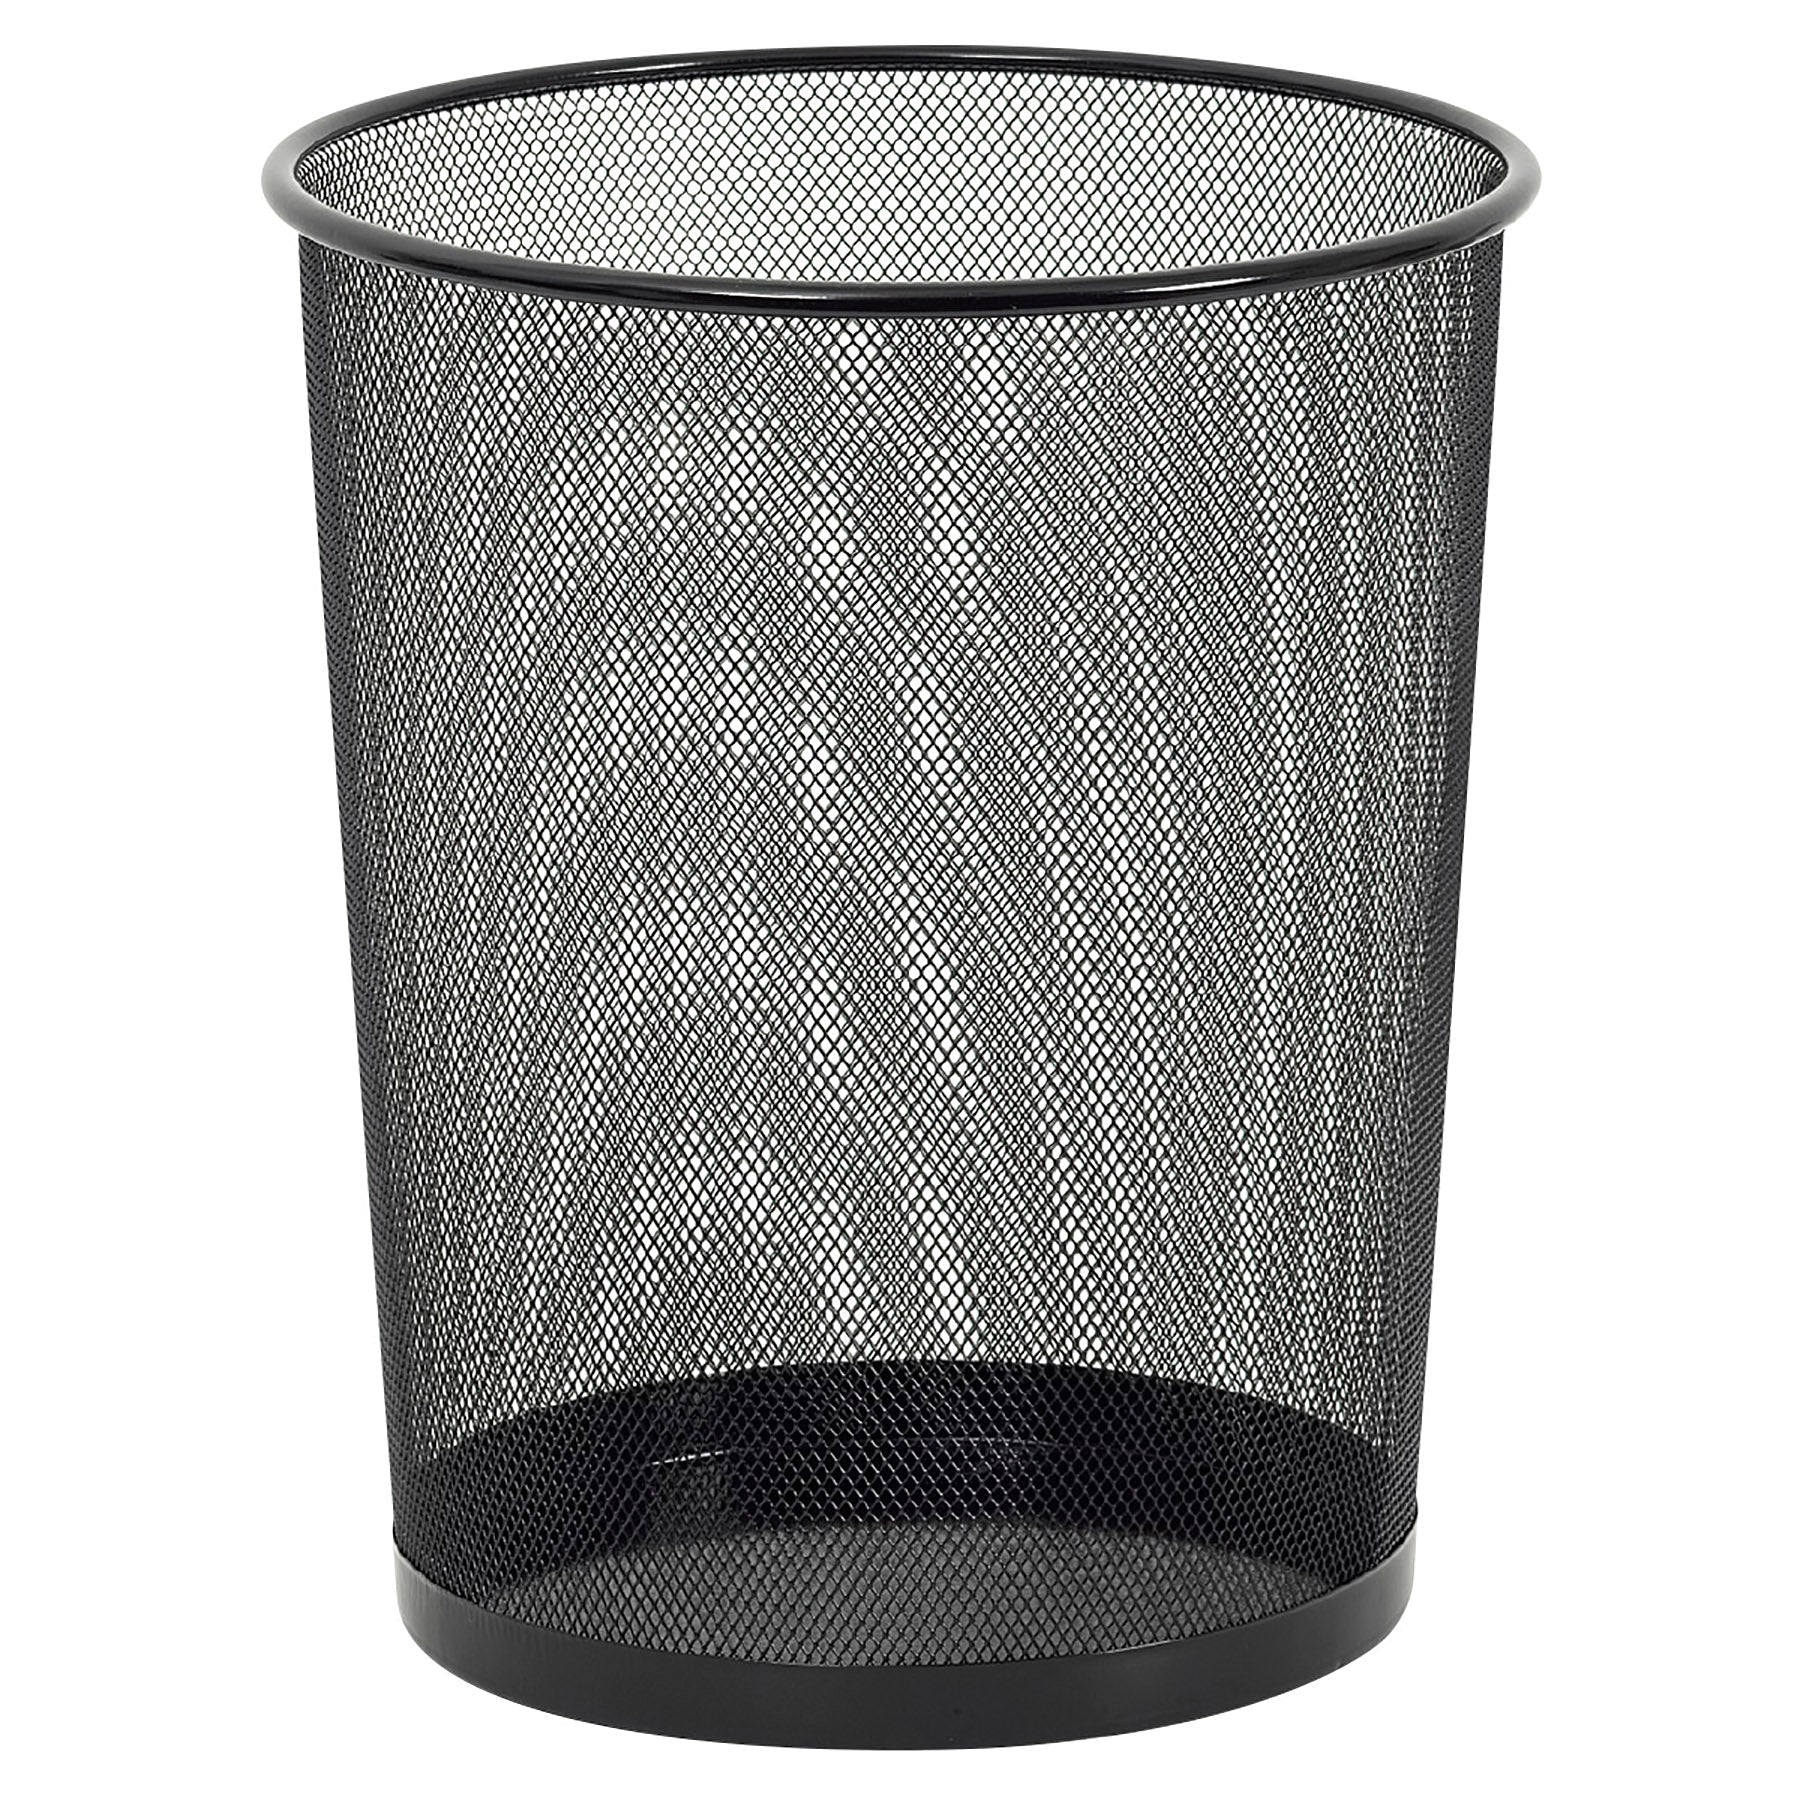 Merangue Metal Mesh Waste Basket 11.5x14in